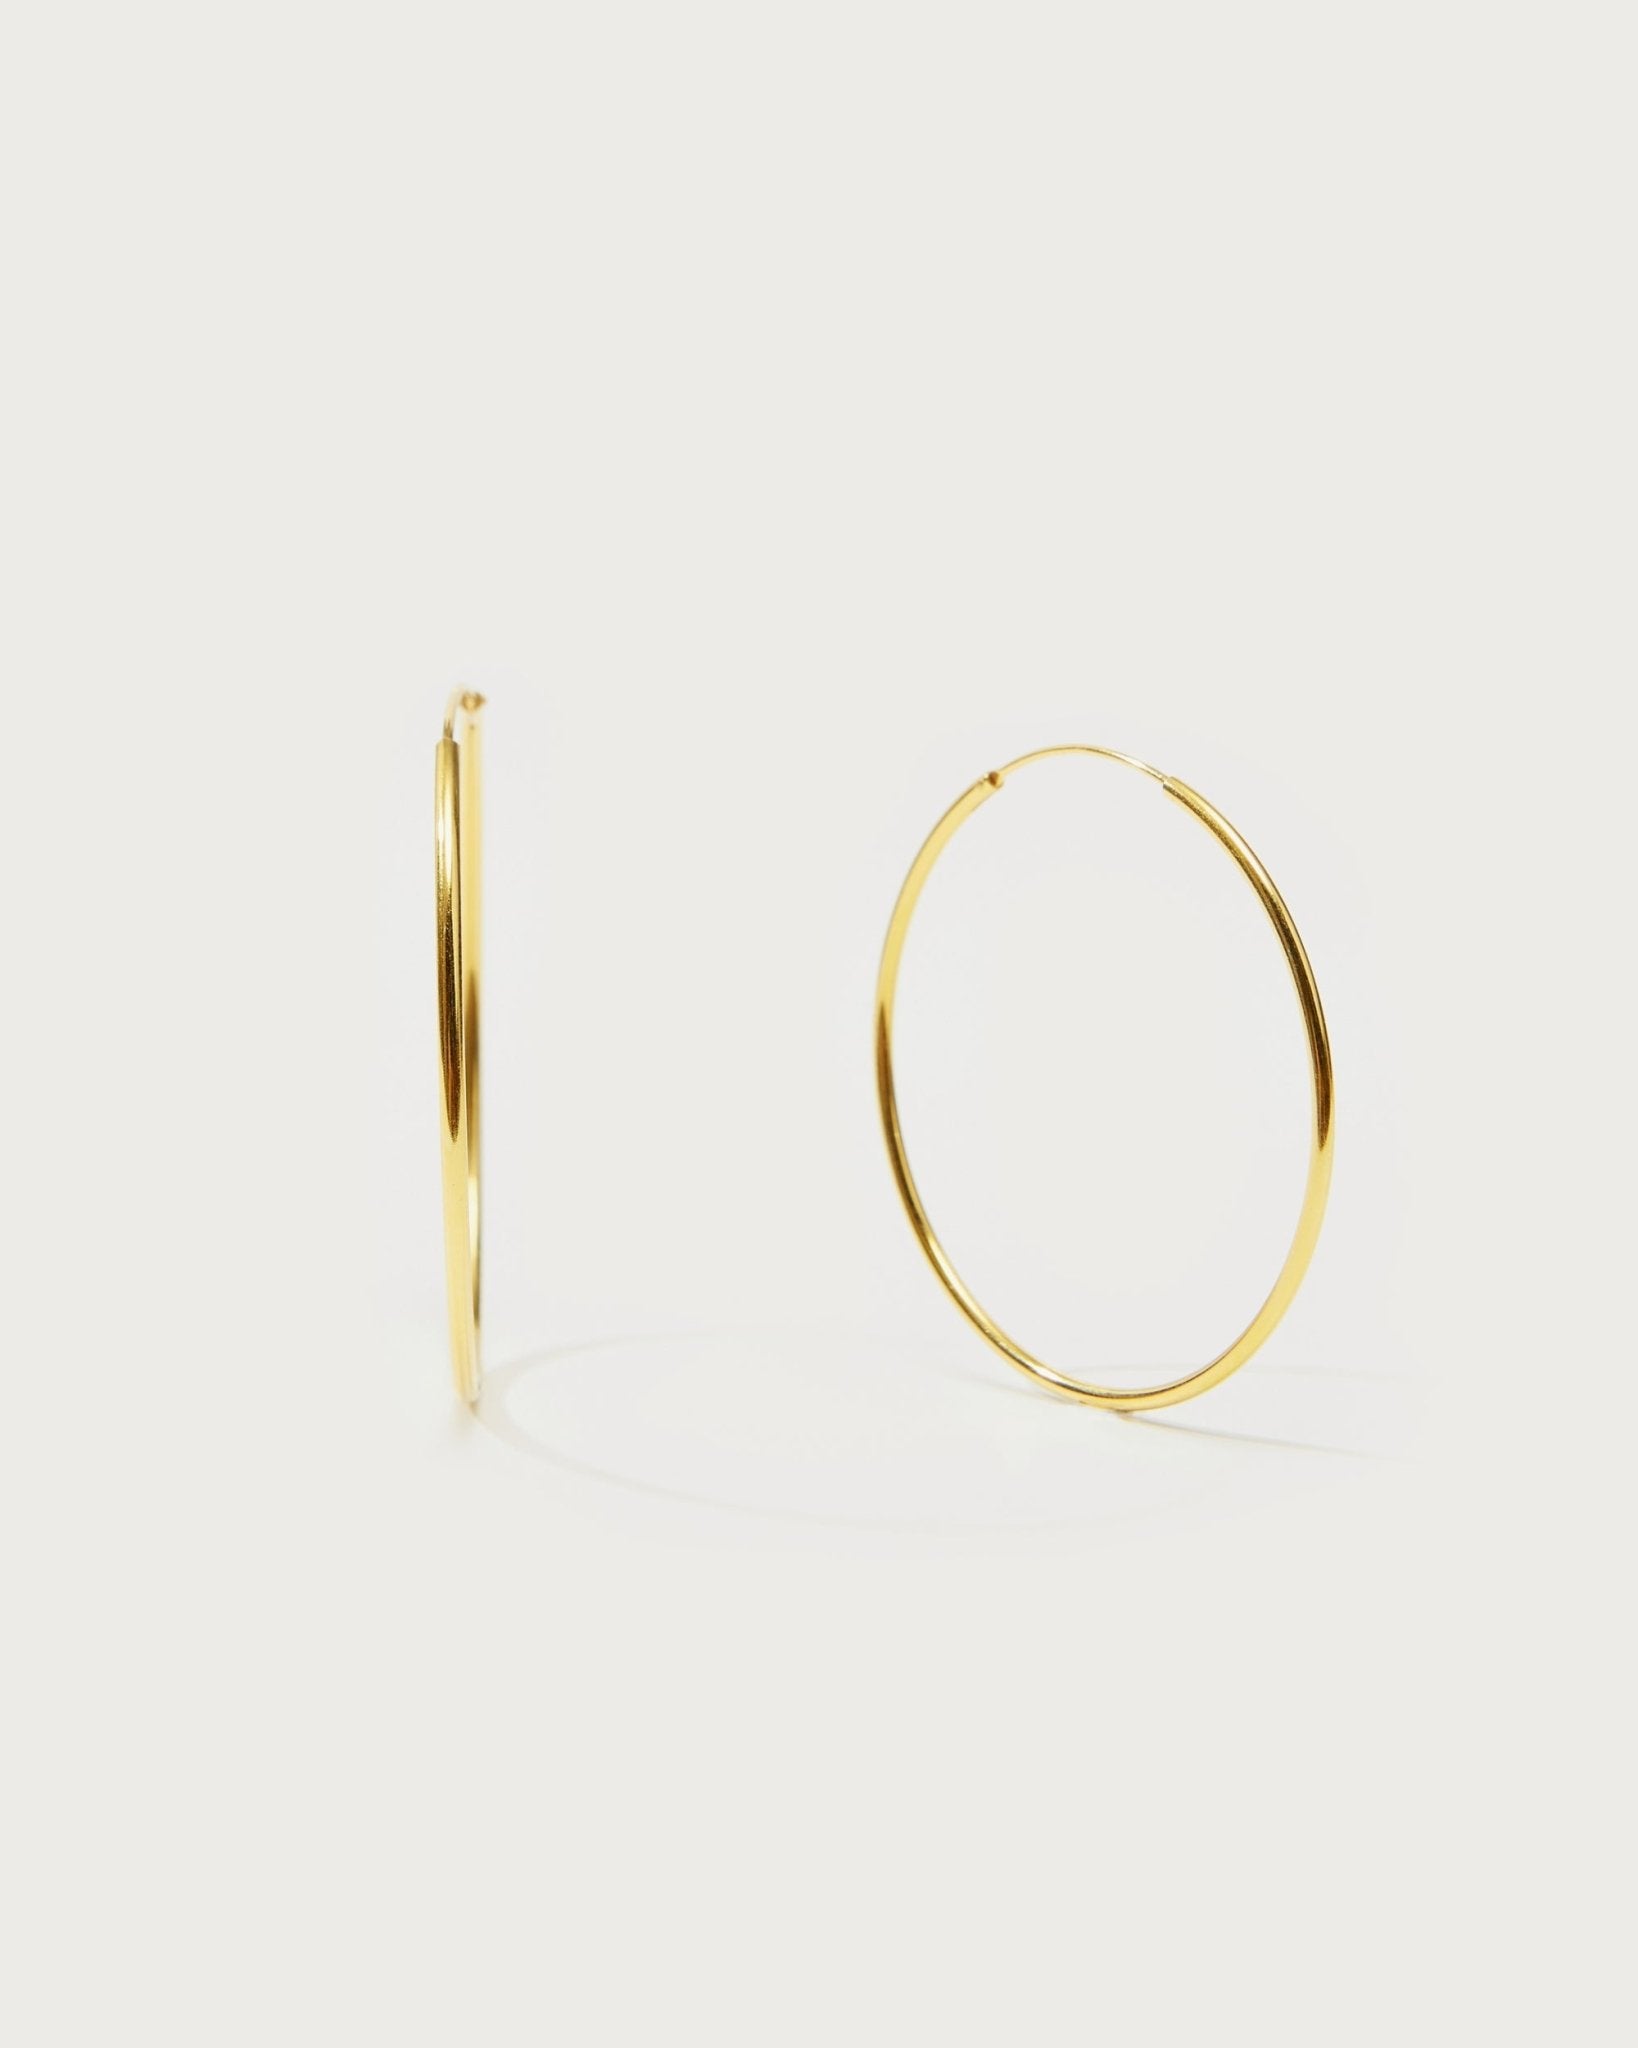 Gold 30mm Skinny Hoop Earrings